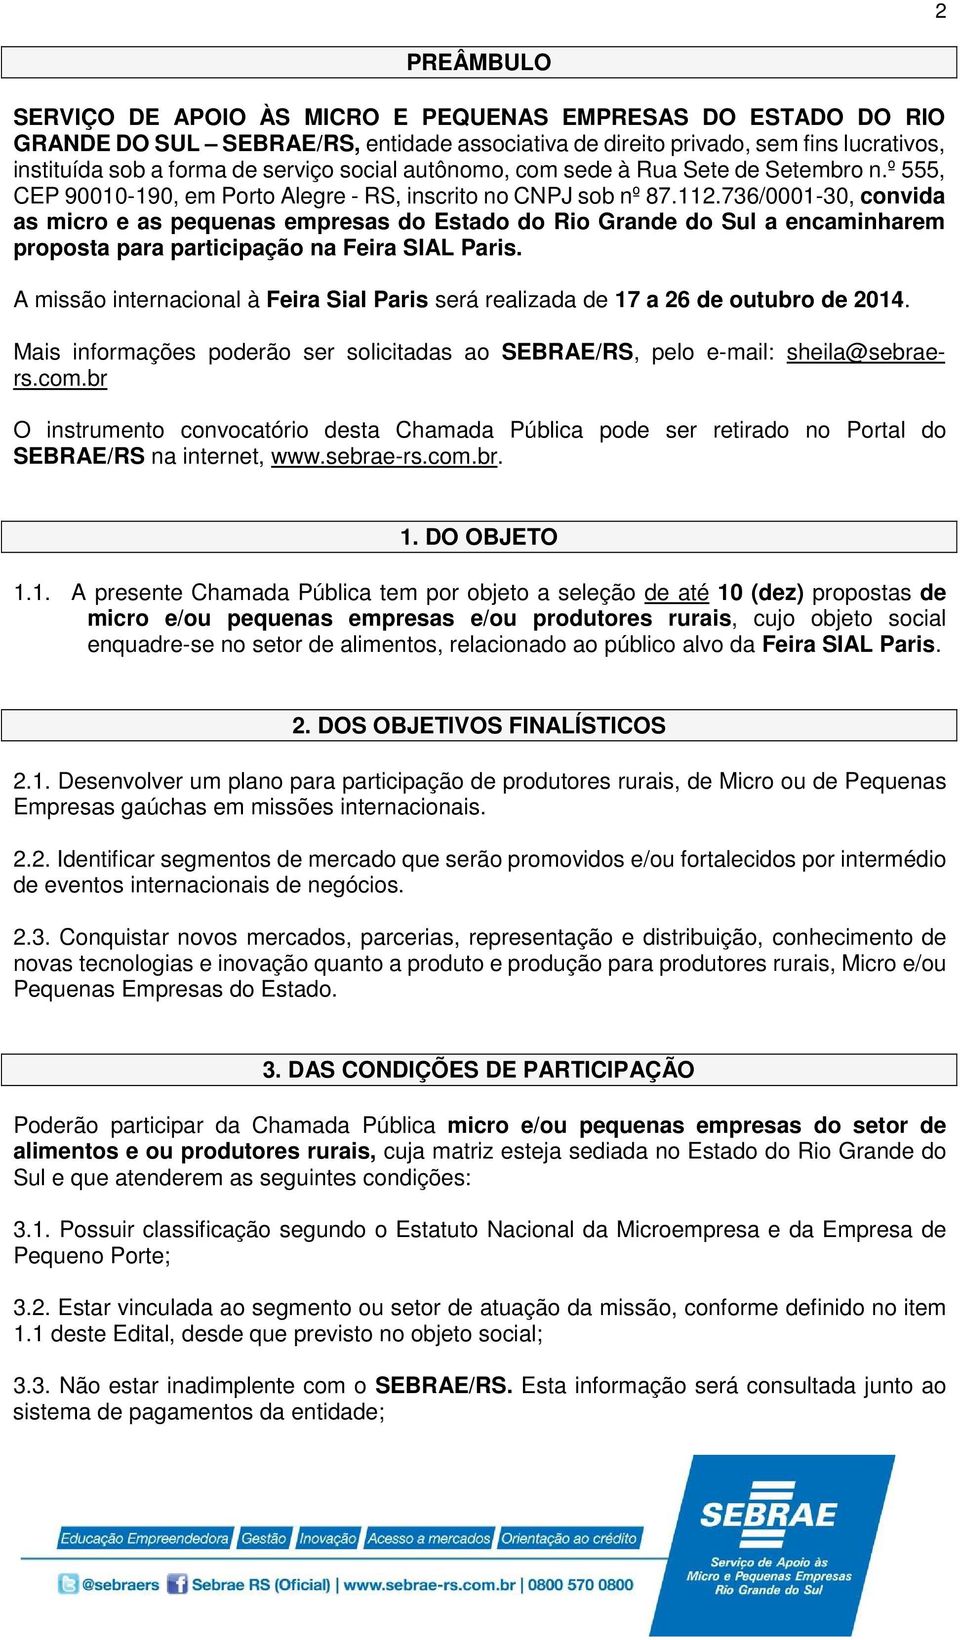 736/0001-30, convida as micro e as pequenas empresas do Estado do Rio Grande do Sul a encaminharem proposta para participação na Feira SIAL Paris.